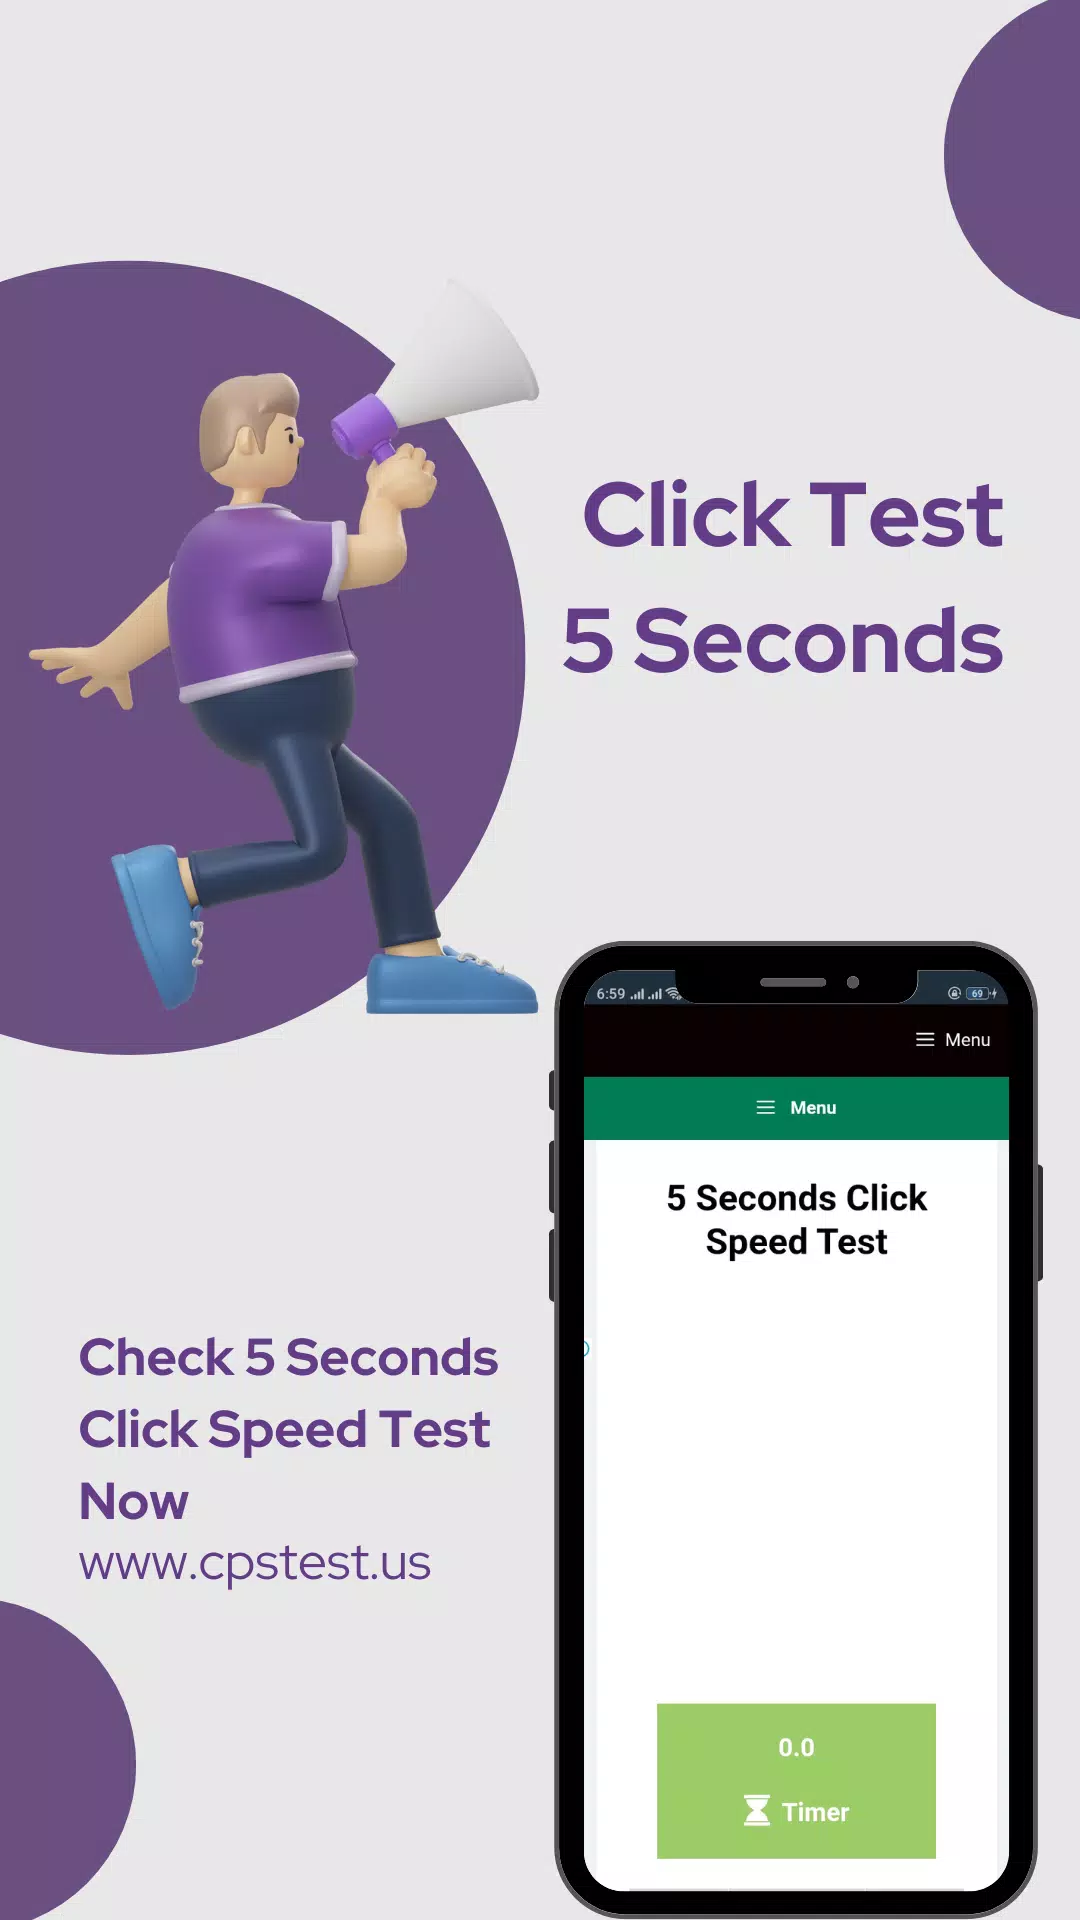 Clicks Per Second Test - 1 Second click test